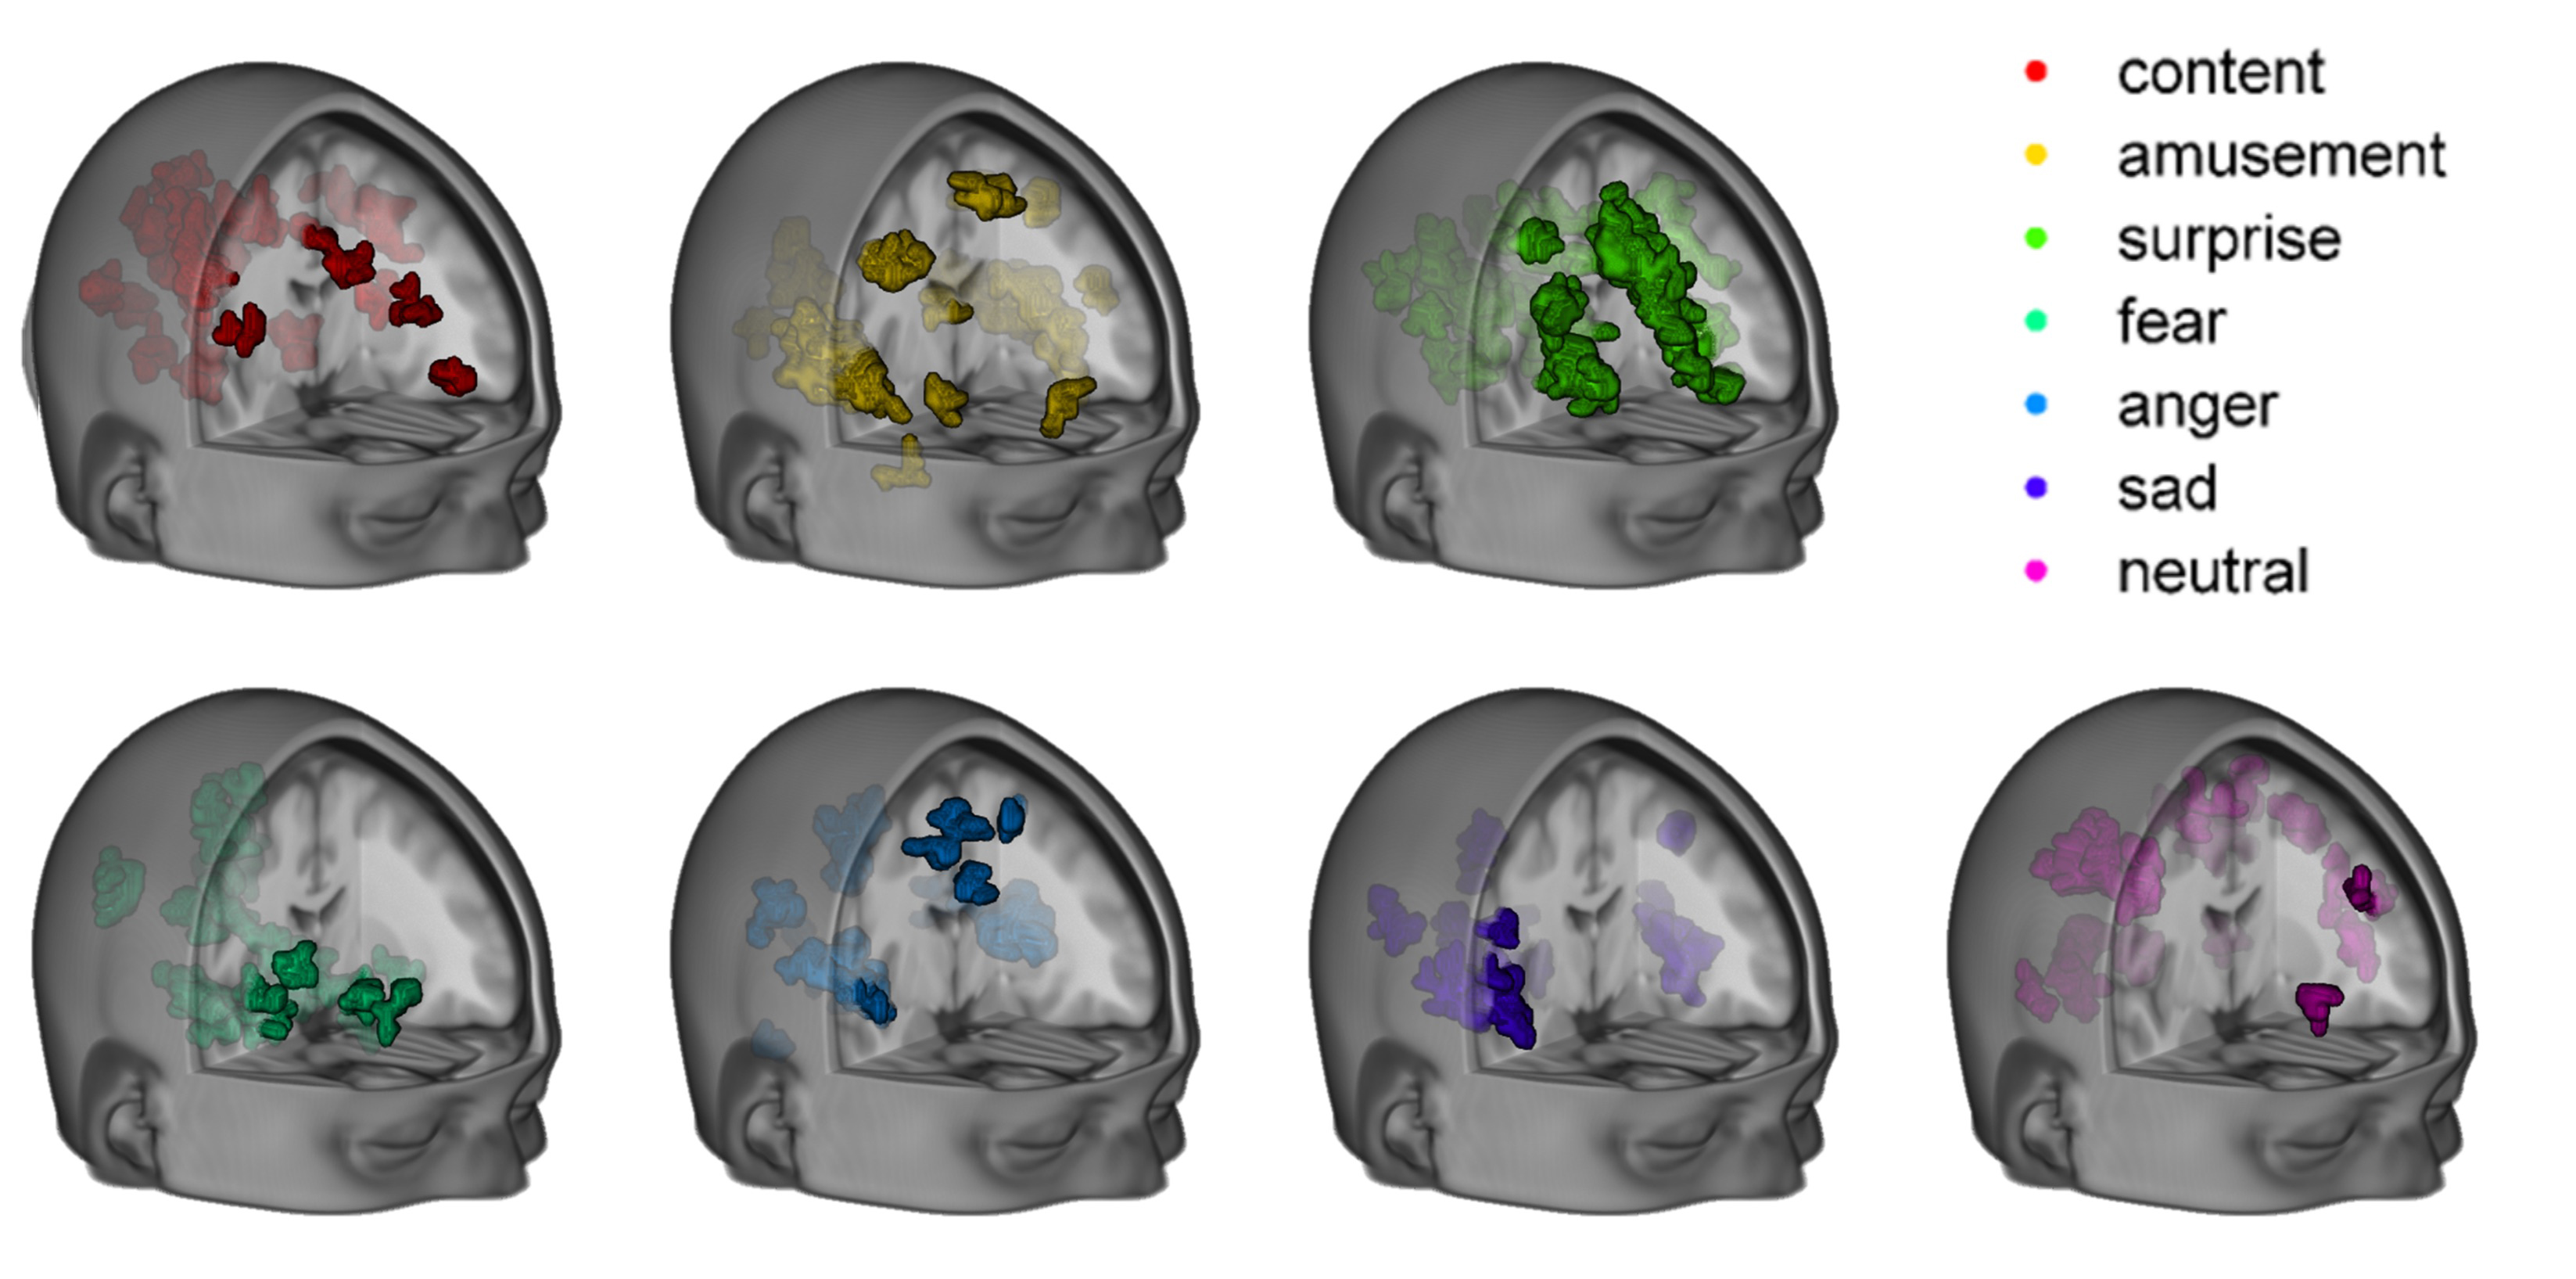 Siete emociones, en el cerebro: alegría (rojo), diversión (amarillo), sorpresa (verde), miedo (verde fluorescente), enfado (azul), tristeza (morado) y neutral (rosa). Imagen: Philip Kragel/K. LaBar. Fuente: Universidad Duke.